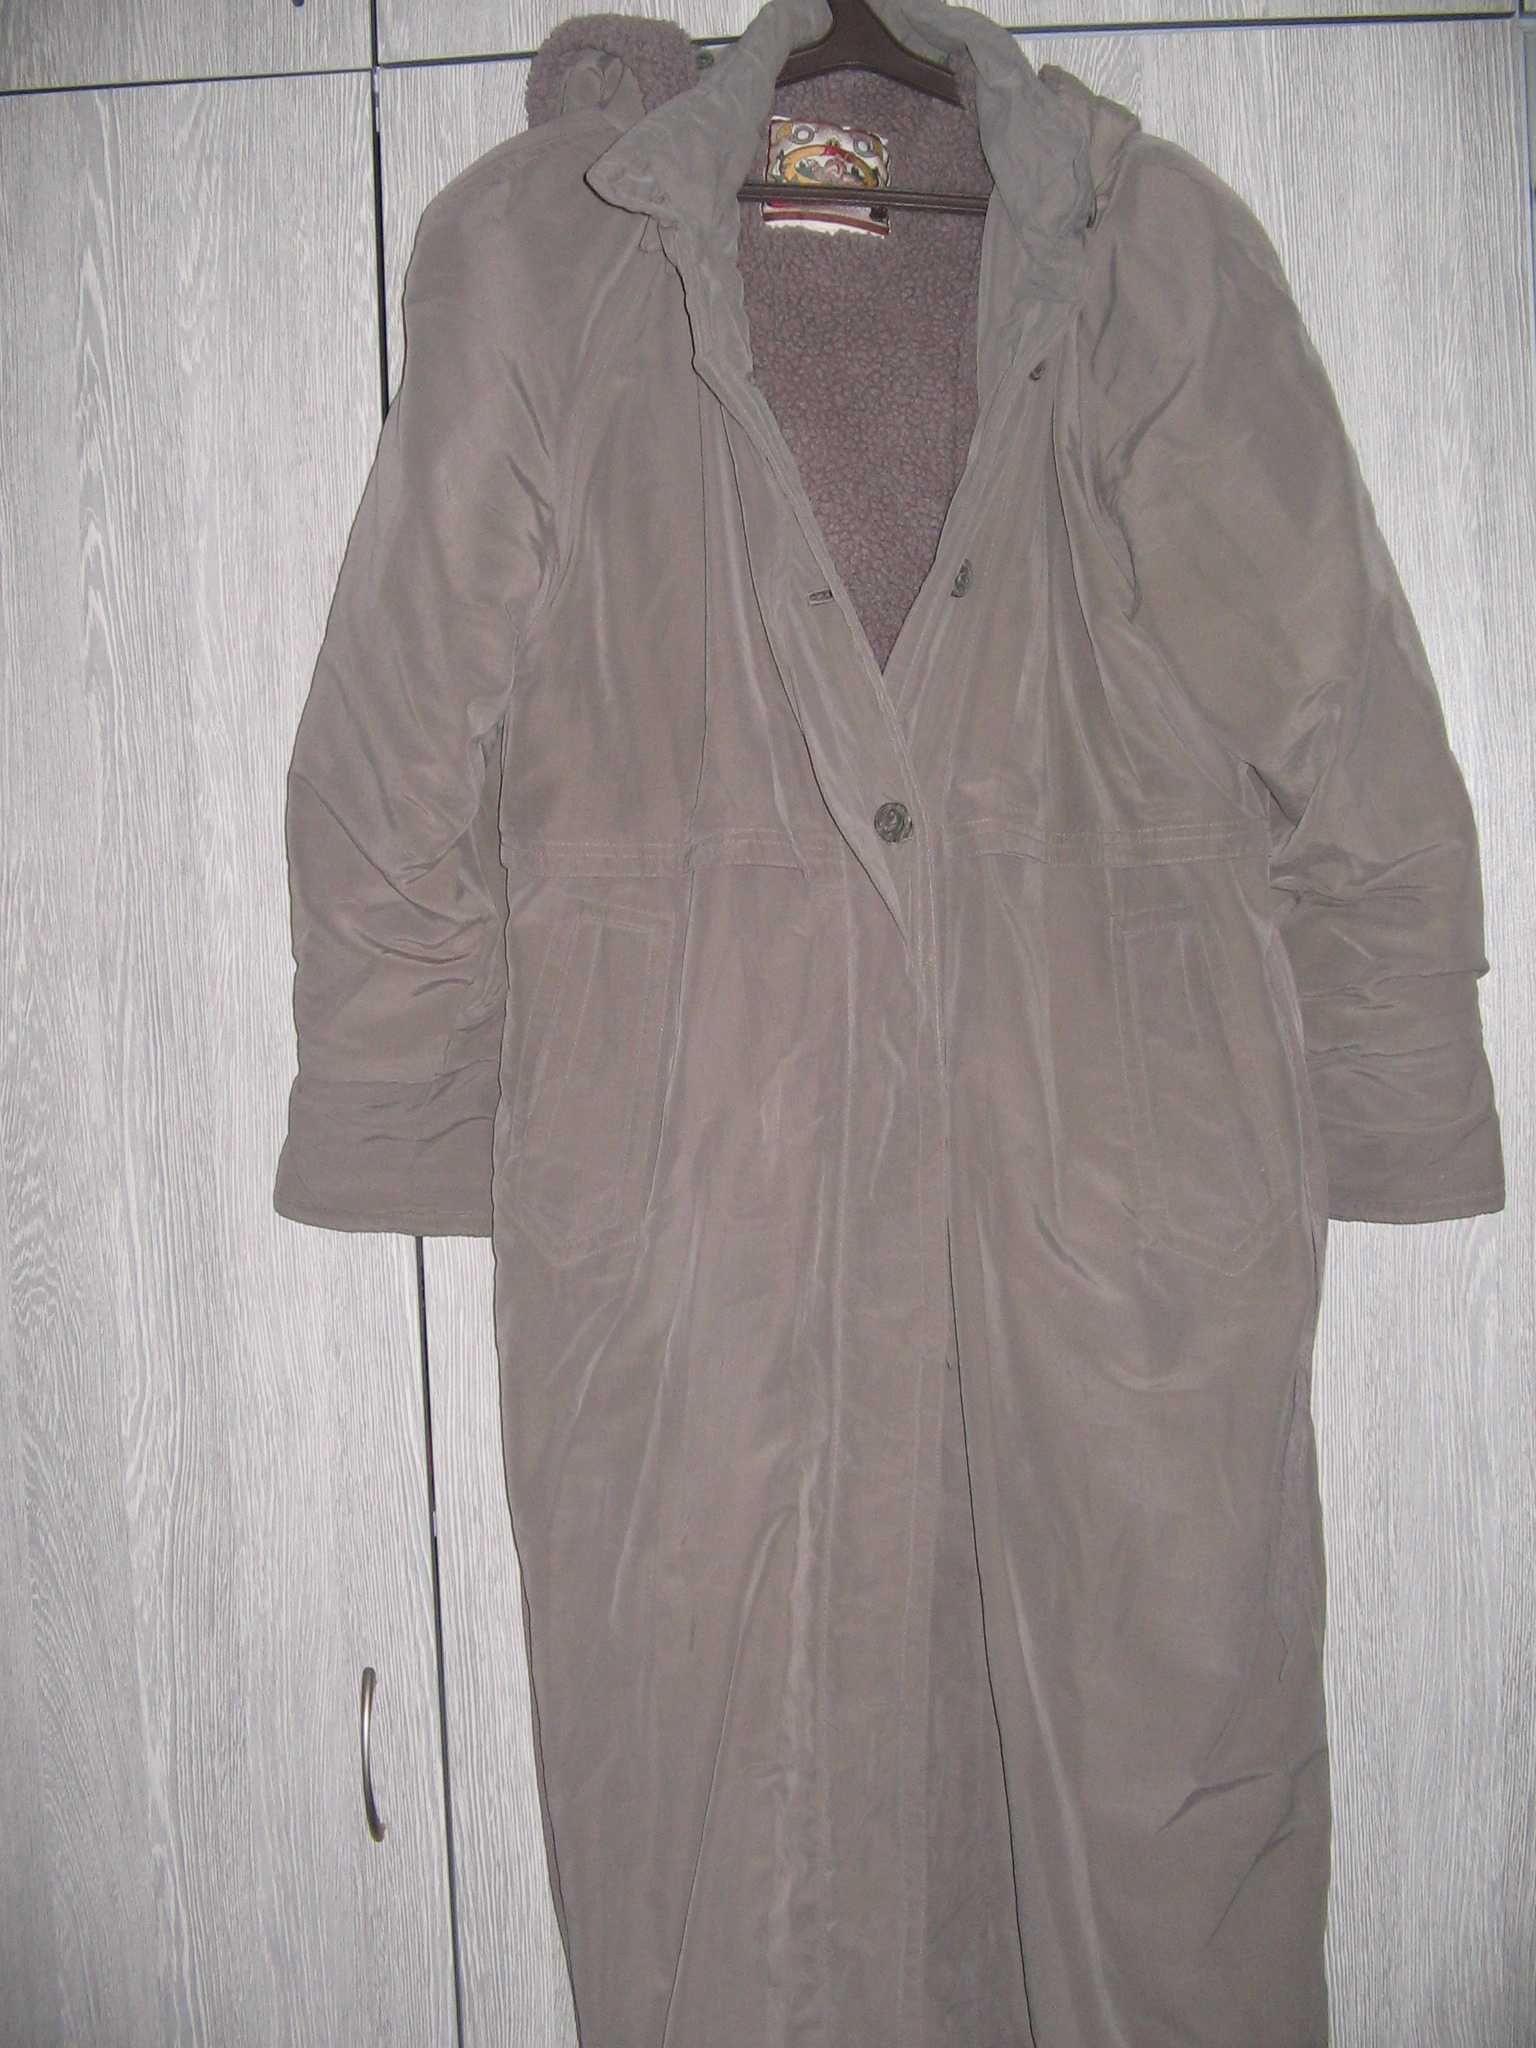 Пальто серое  на цигейке фирма Jingang